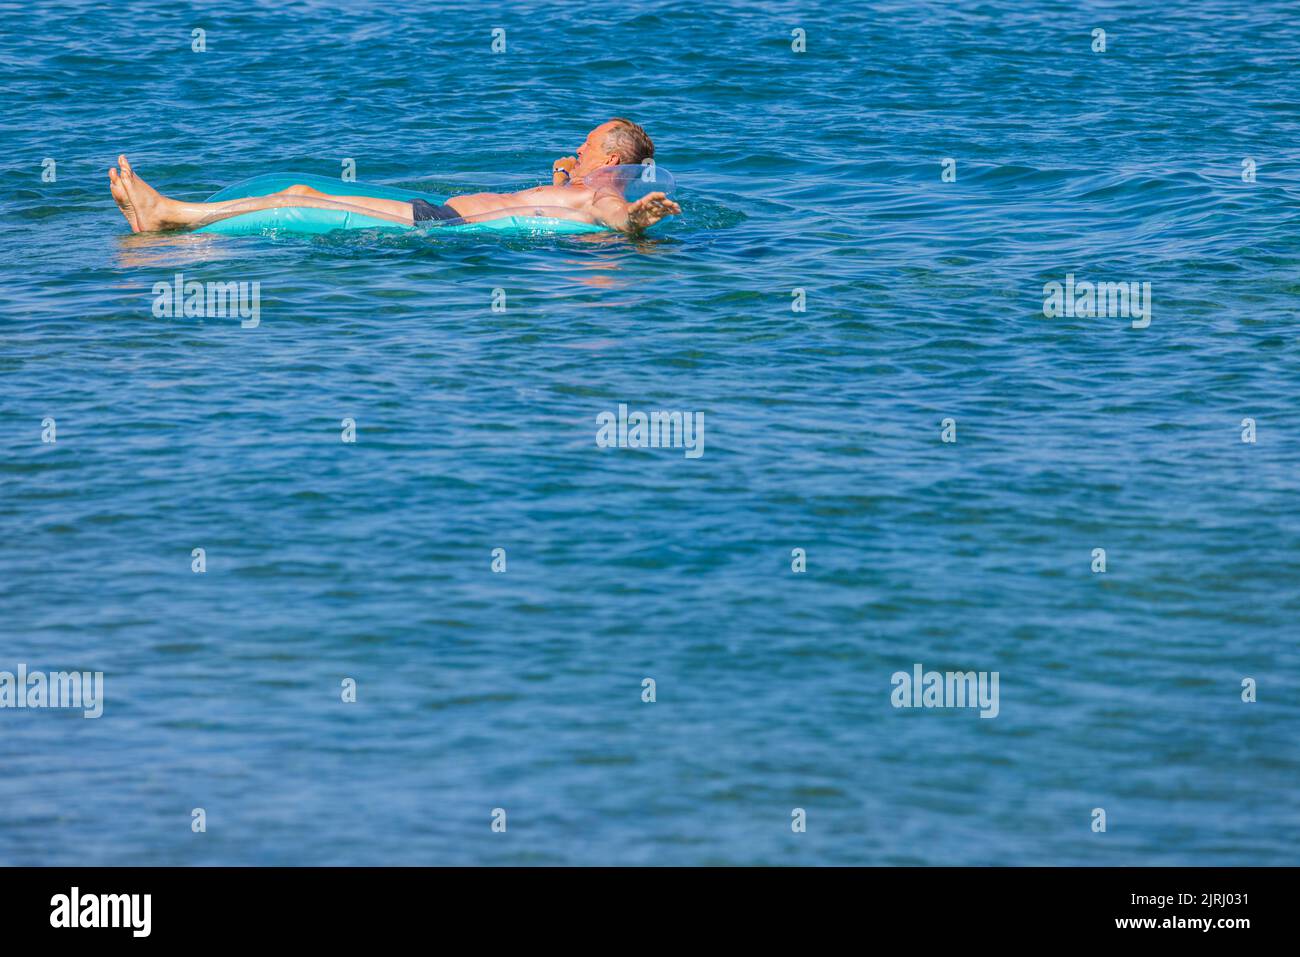 Vue rapprochée de l'homme sur un matelas gonflable sur une surface d'eau bleue. Rhodes. Grèce. Banque D'Images